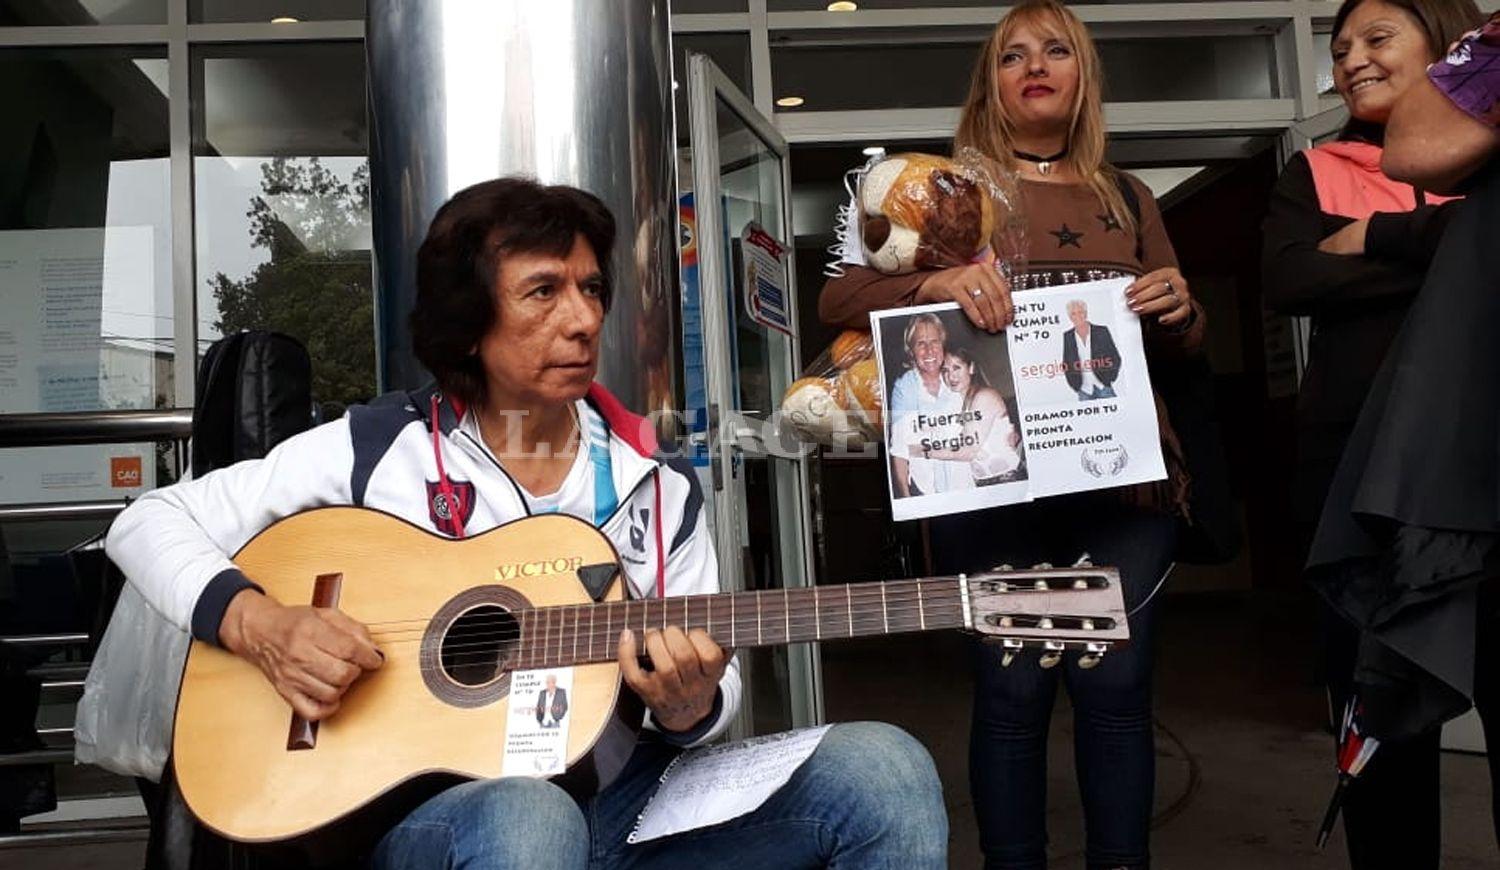 APOYO A SERGIO. Victor Díaz canta canciones en la puerta del hospital.